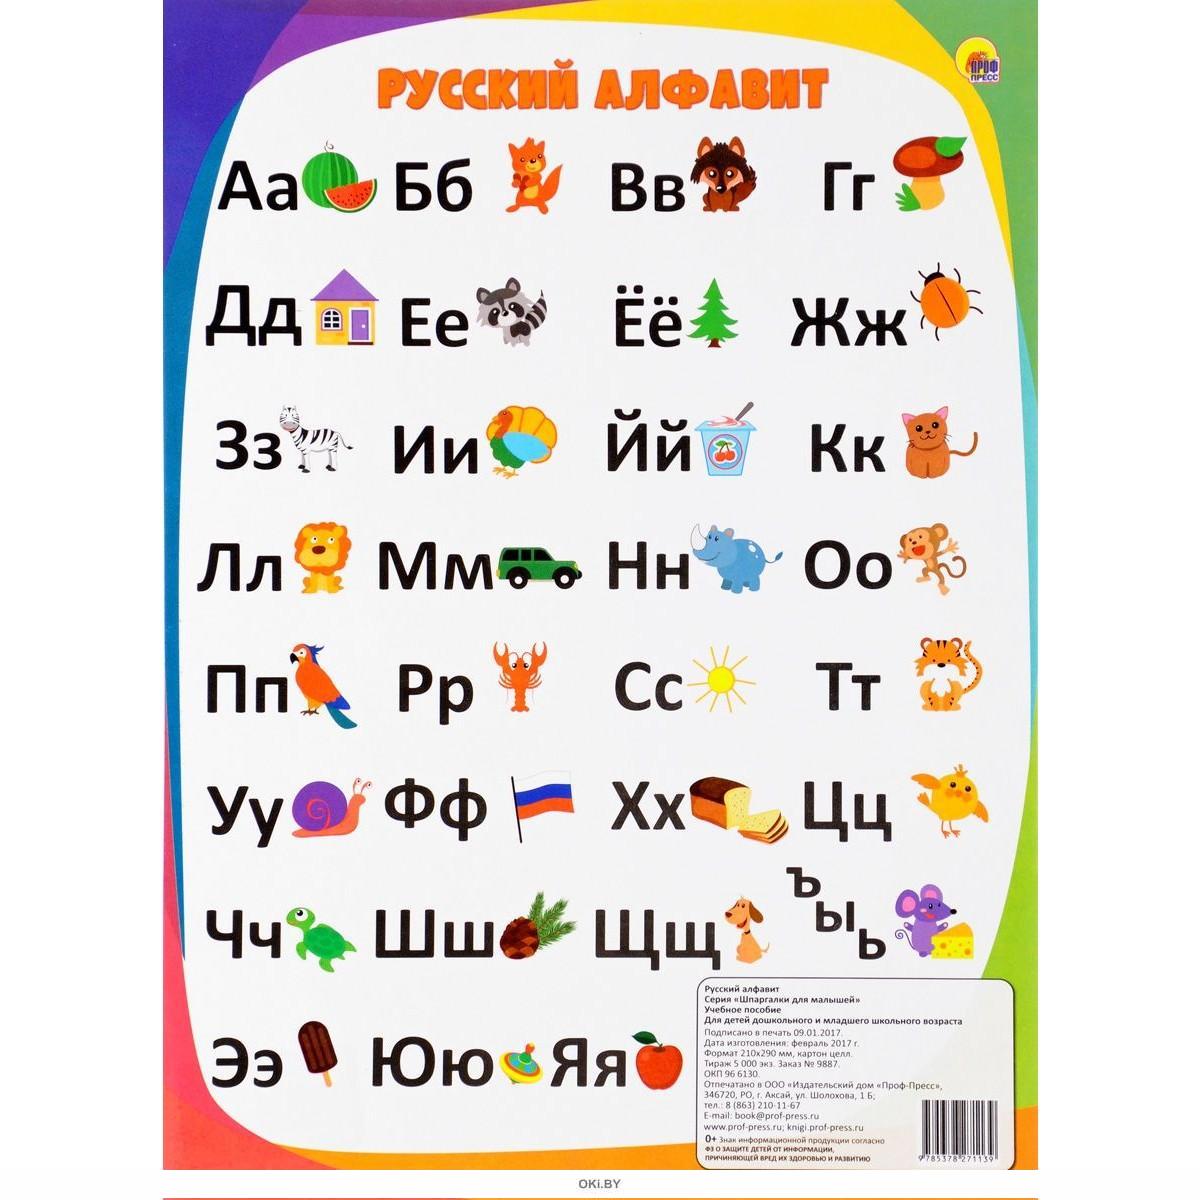 Русский алфавит это. Алфавит. Алфавит русского языка. Alфавит. Алфавит для детей.